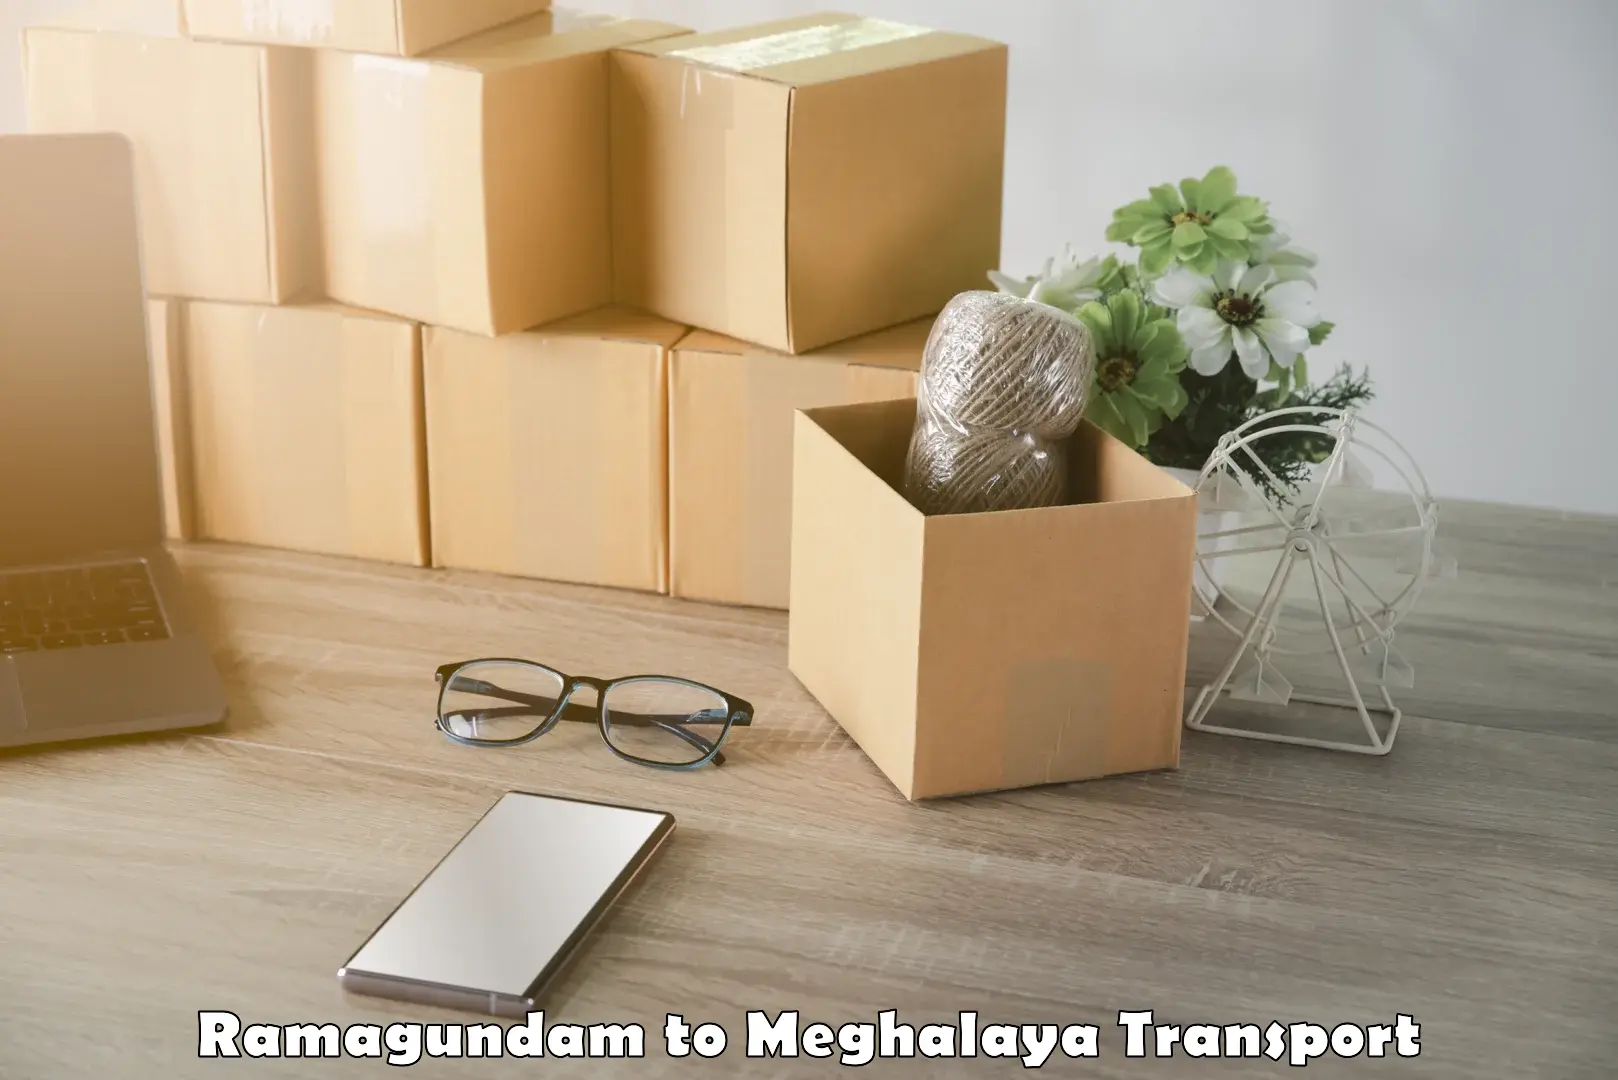 Online transport booking in Ramagundam to NIT Meghalaya